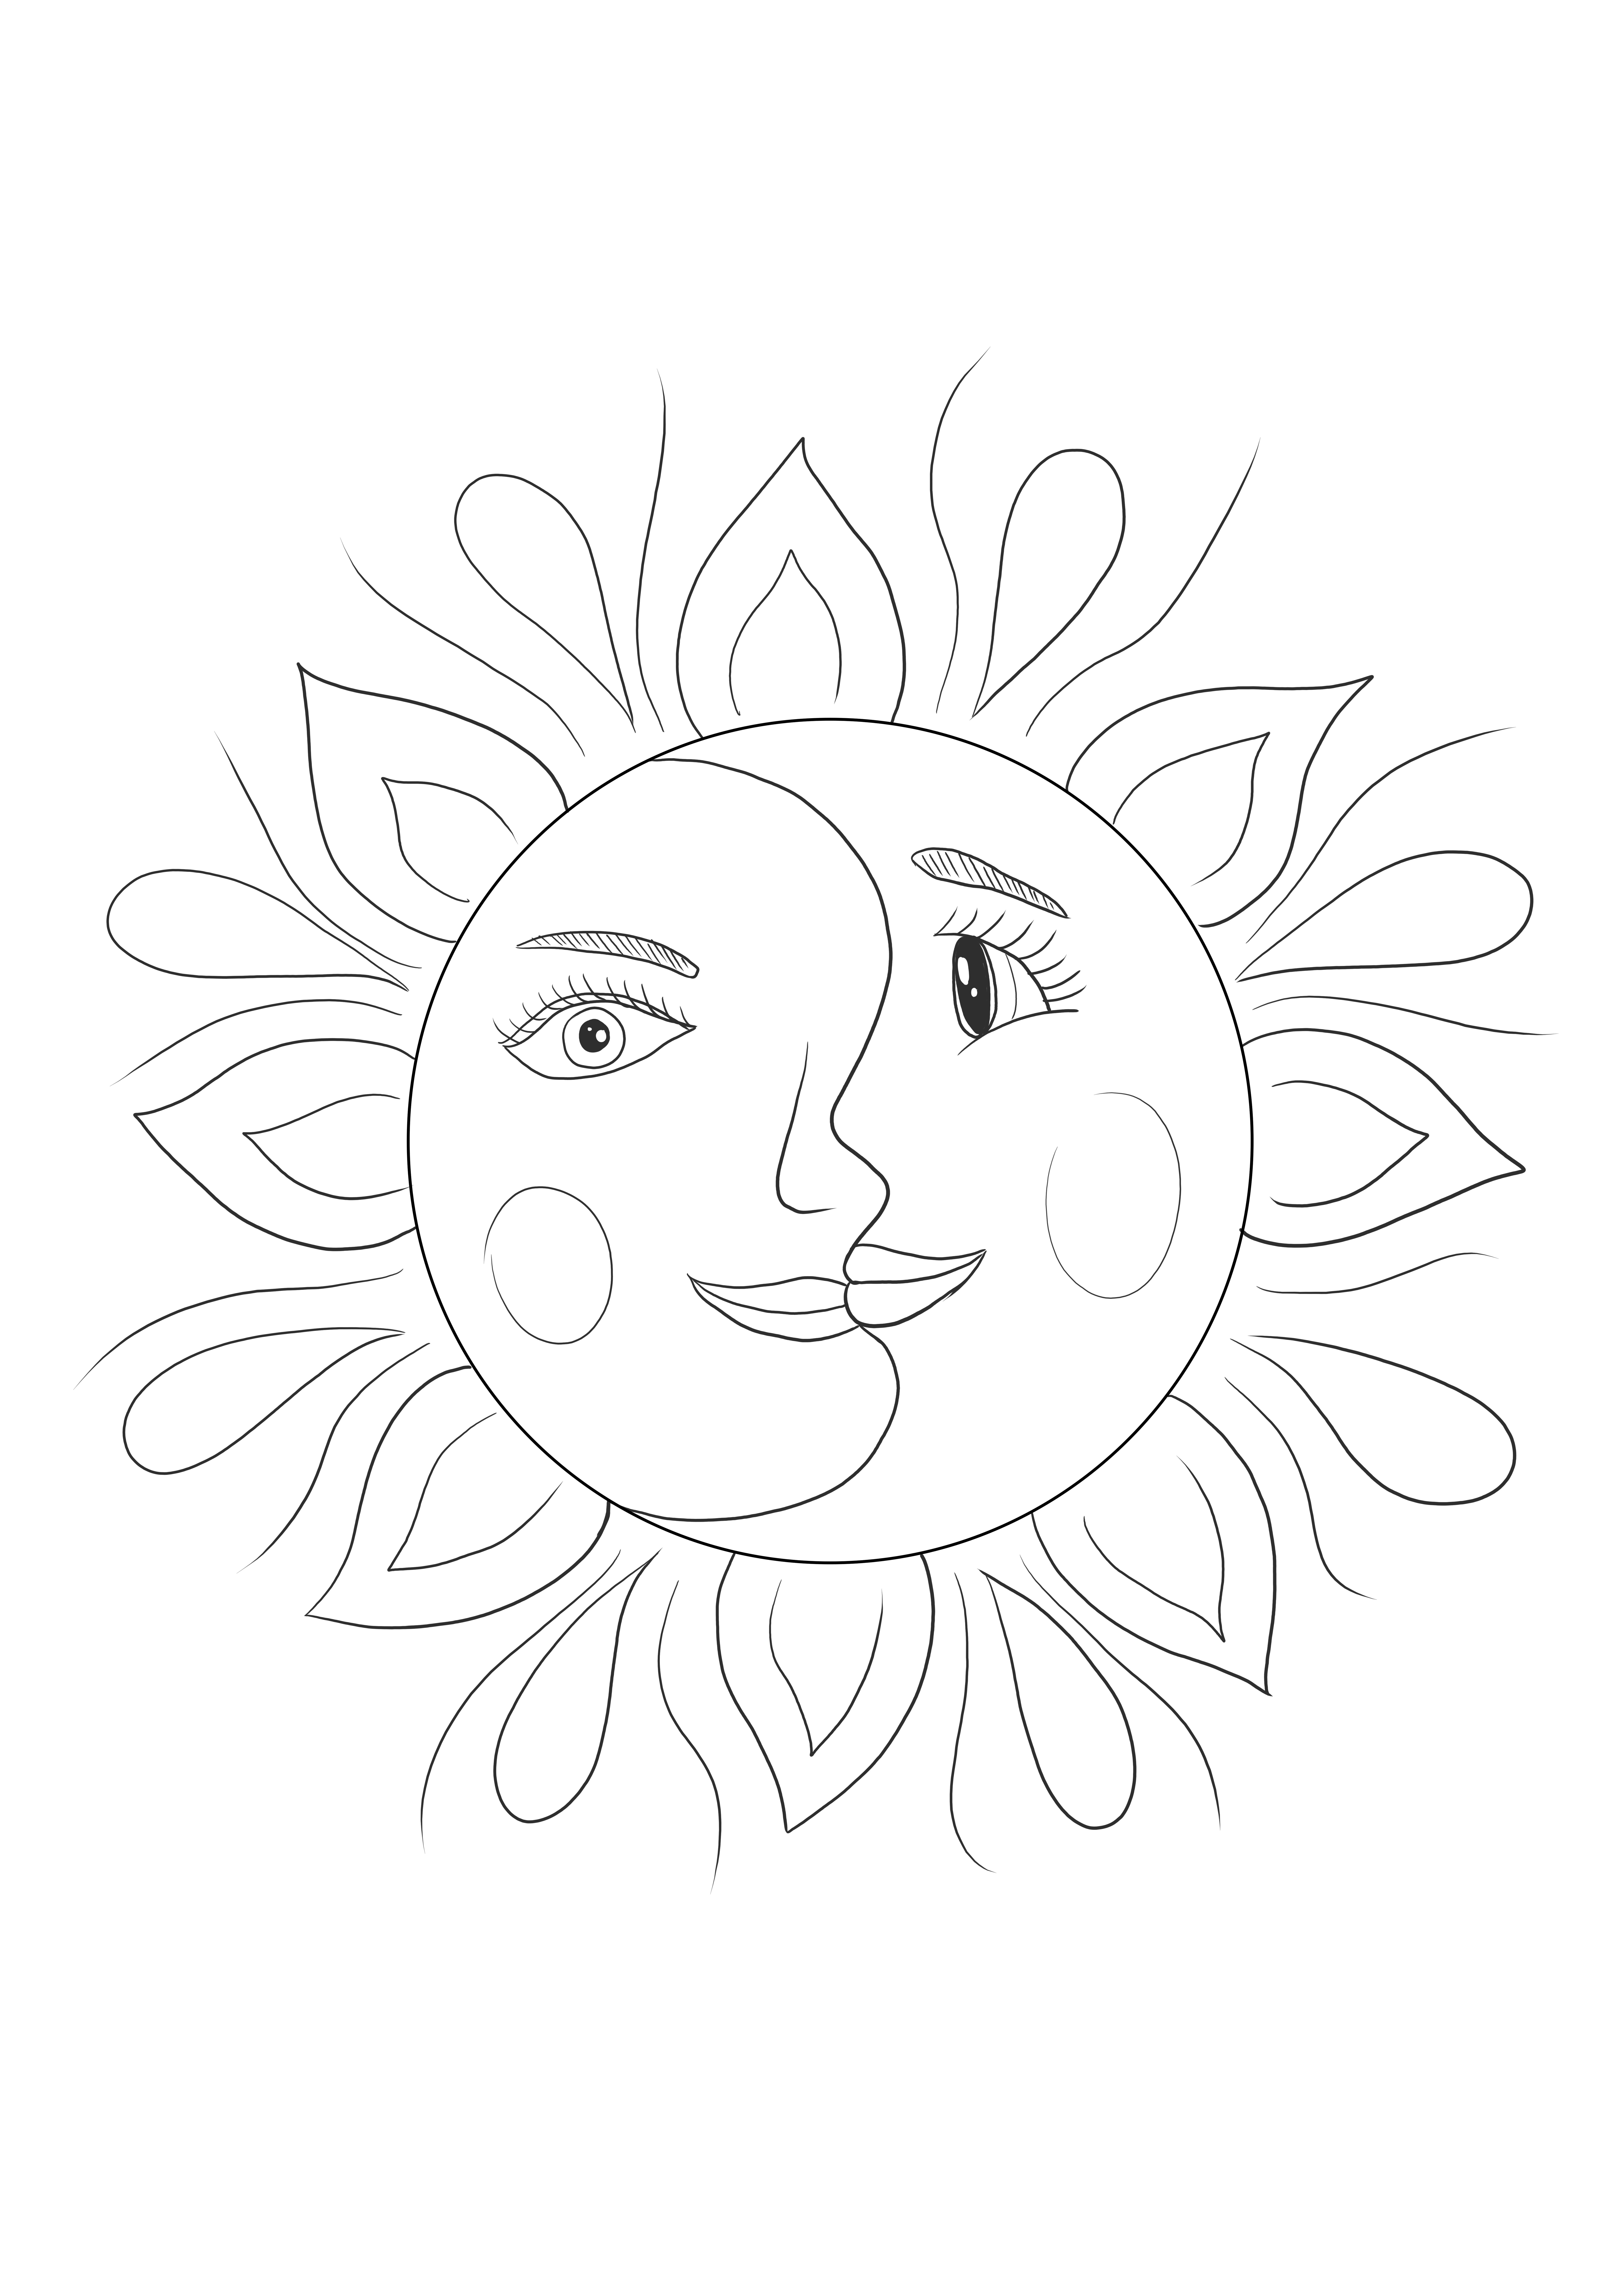 アート愛好家の子供や大人のためのサイケデリック アート スタイルの太陽と月